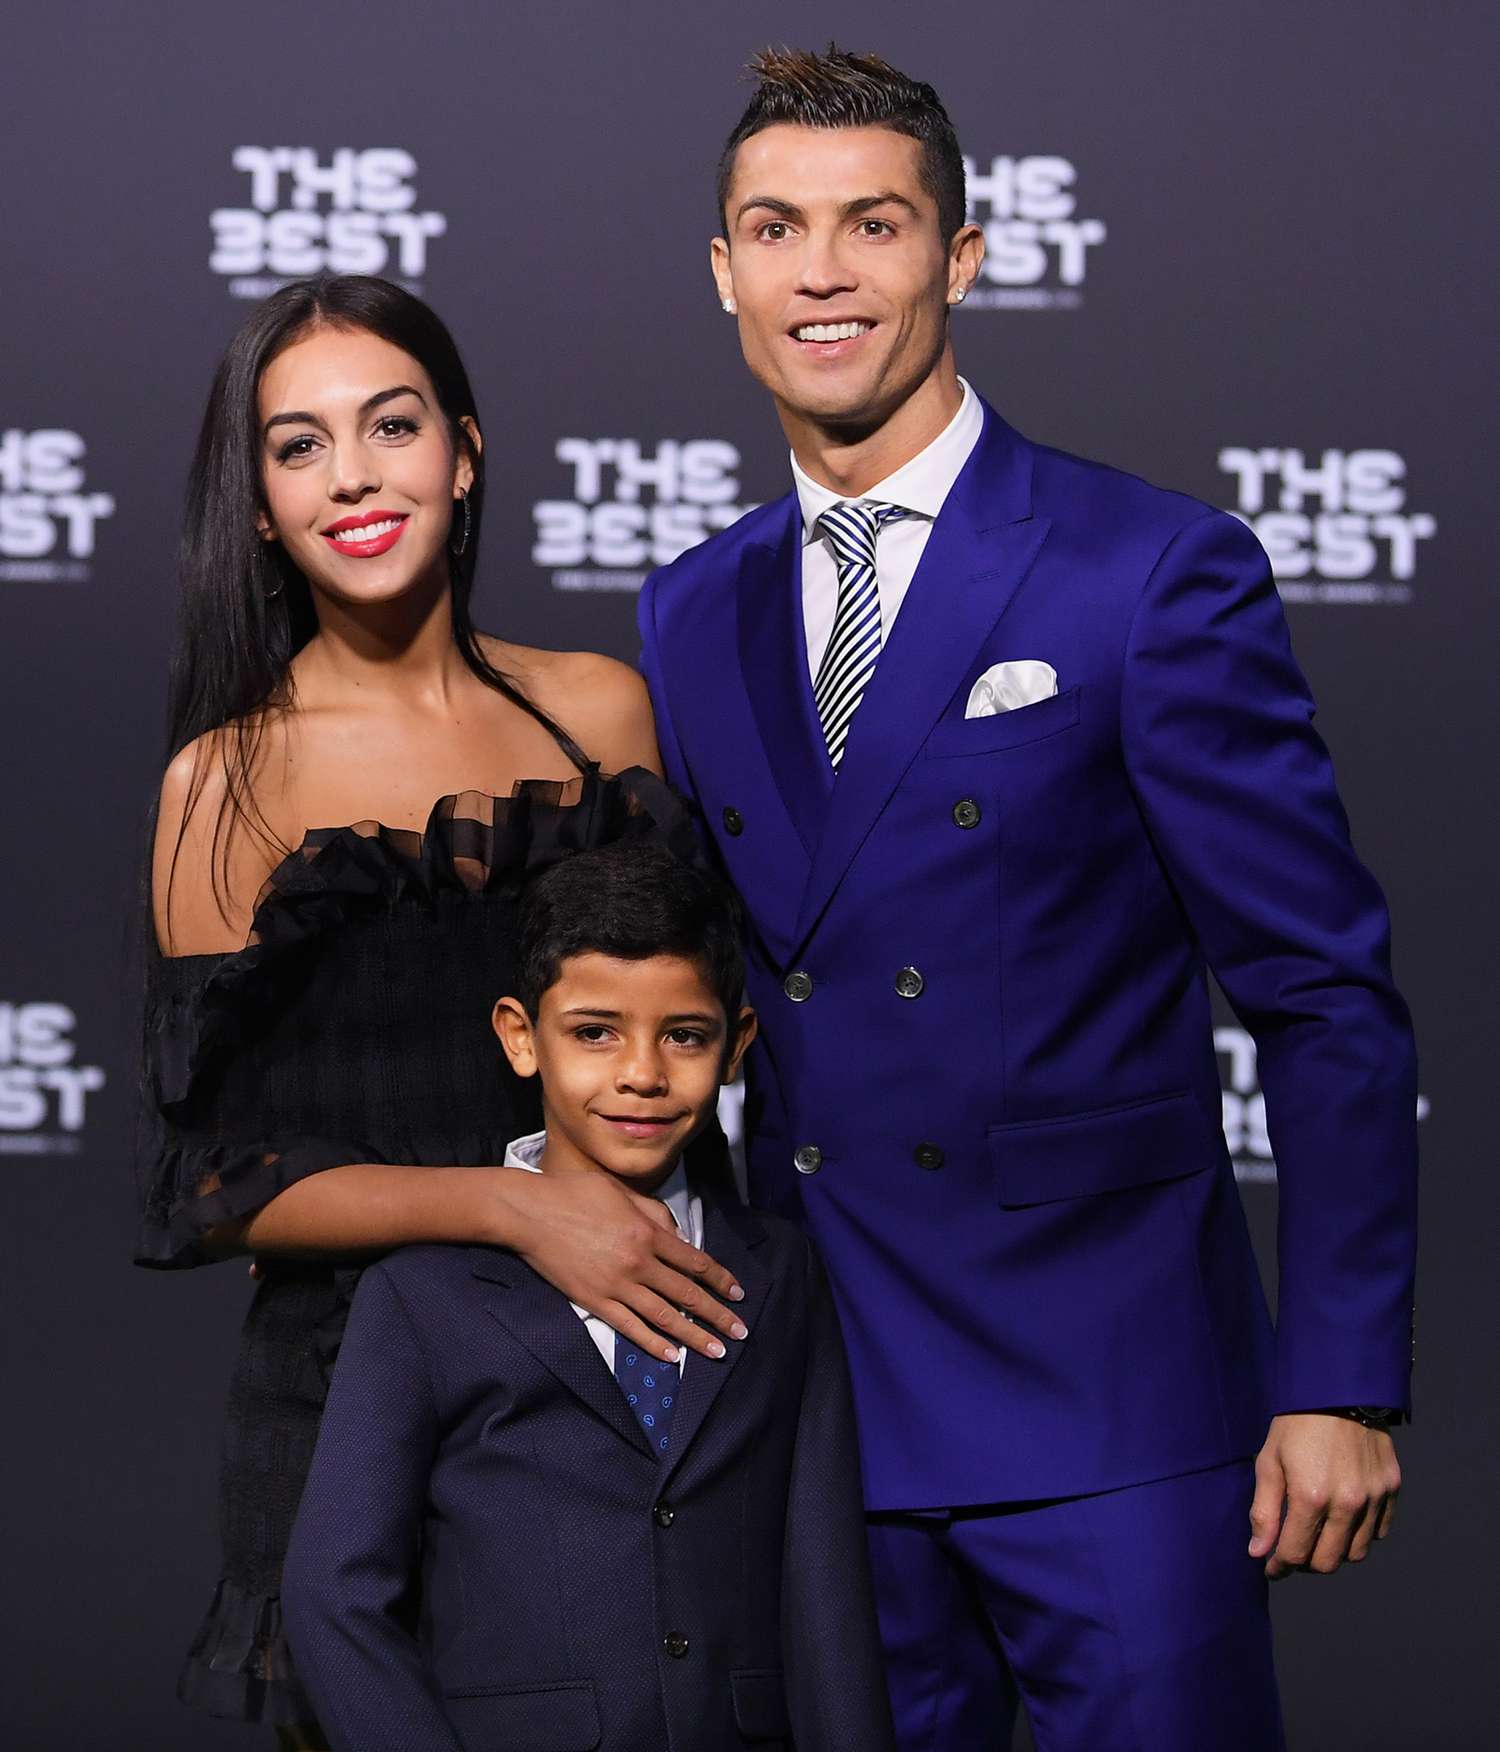 Chia tay Ronaldo vì 'bám váy mẹ', siêu mẫu quyến rũ nhất thế giới mất 11 triệu người theo dõi sau một ngày - Ảnh 3.